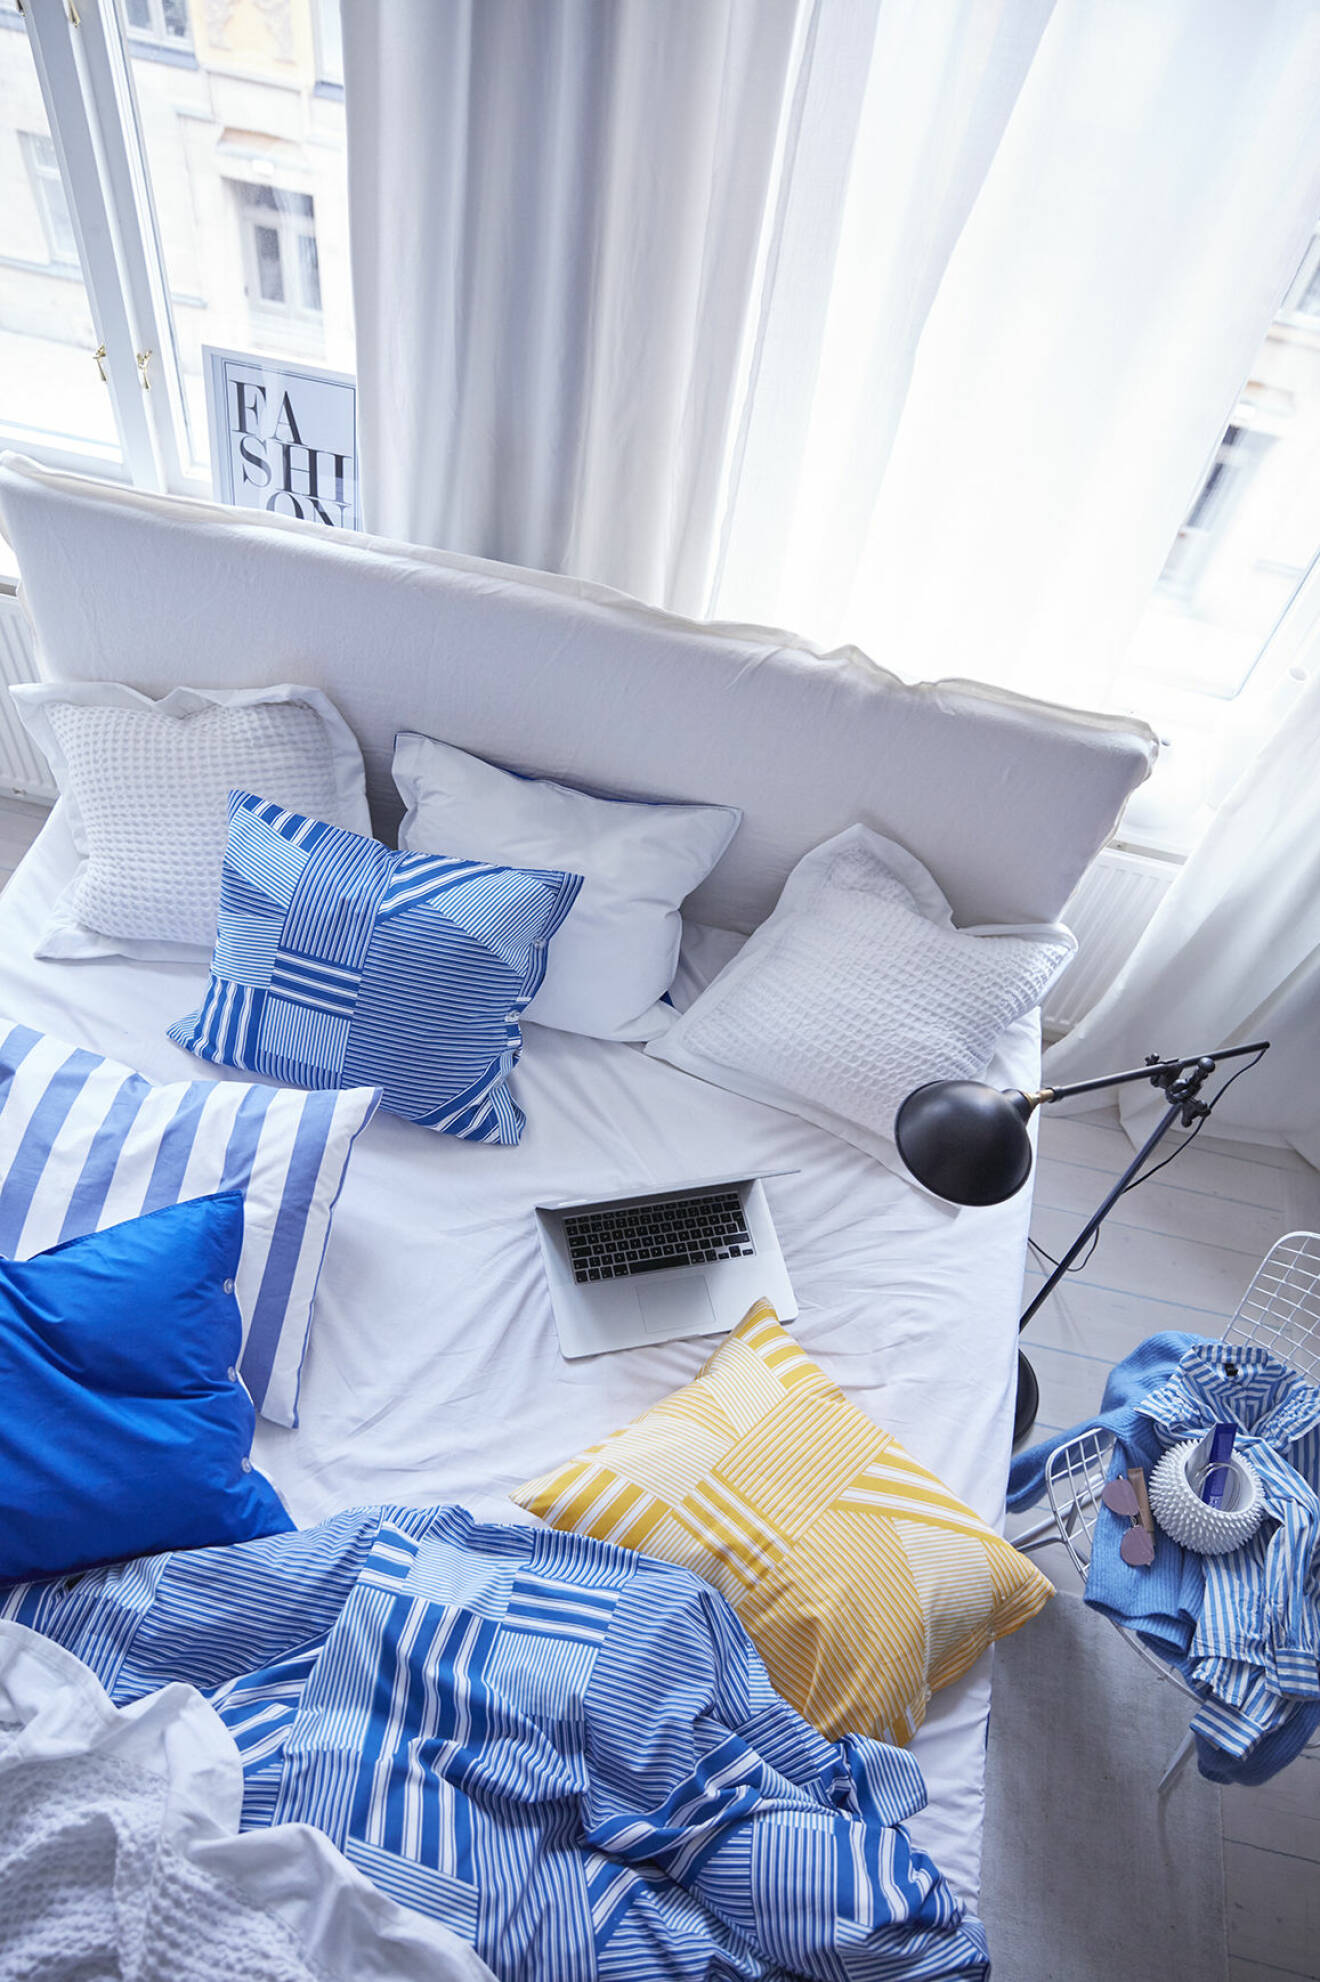 Sovrum med säng och sängkläder i blått, vitt och gult. Jotex vårnyheter 2018.